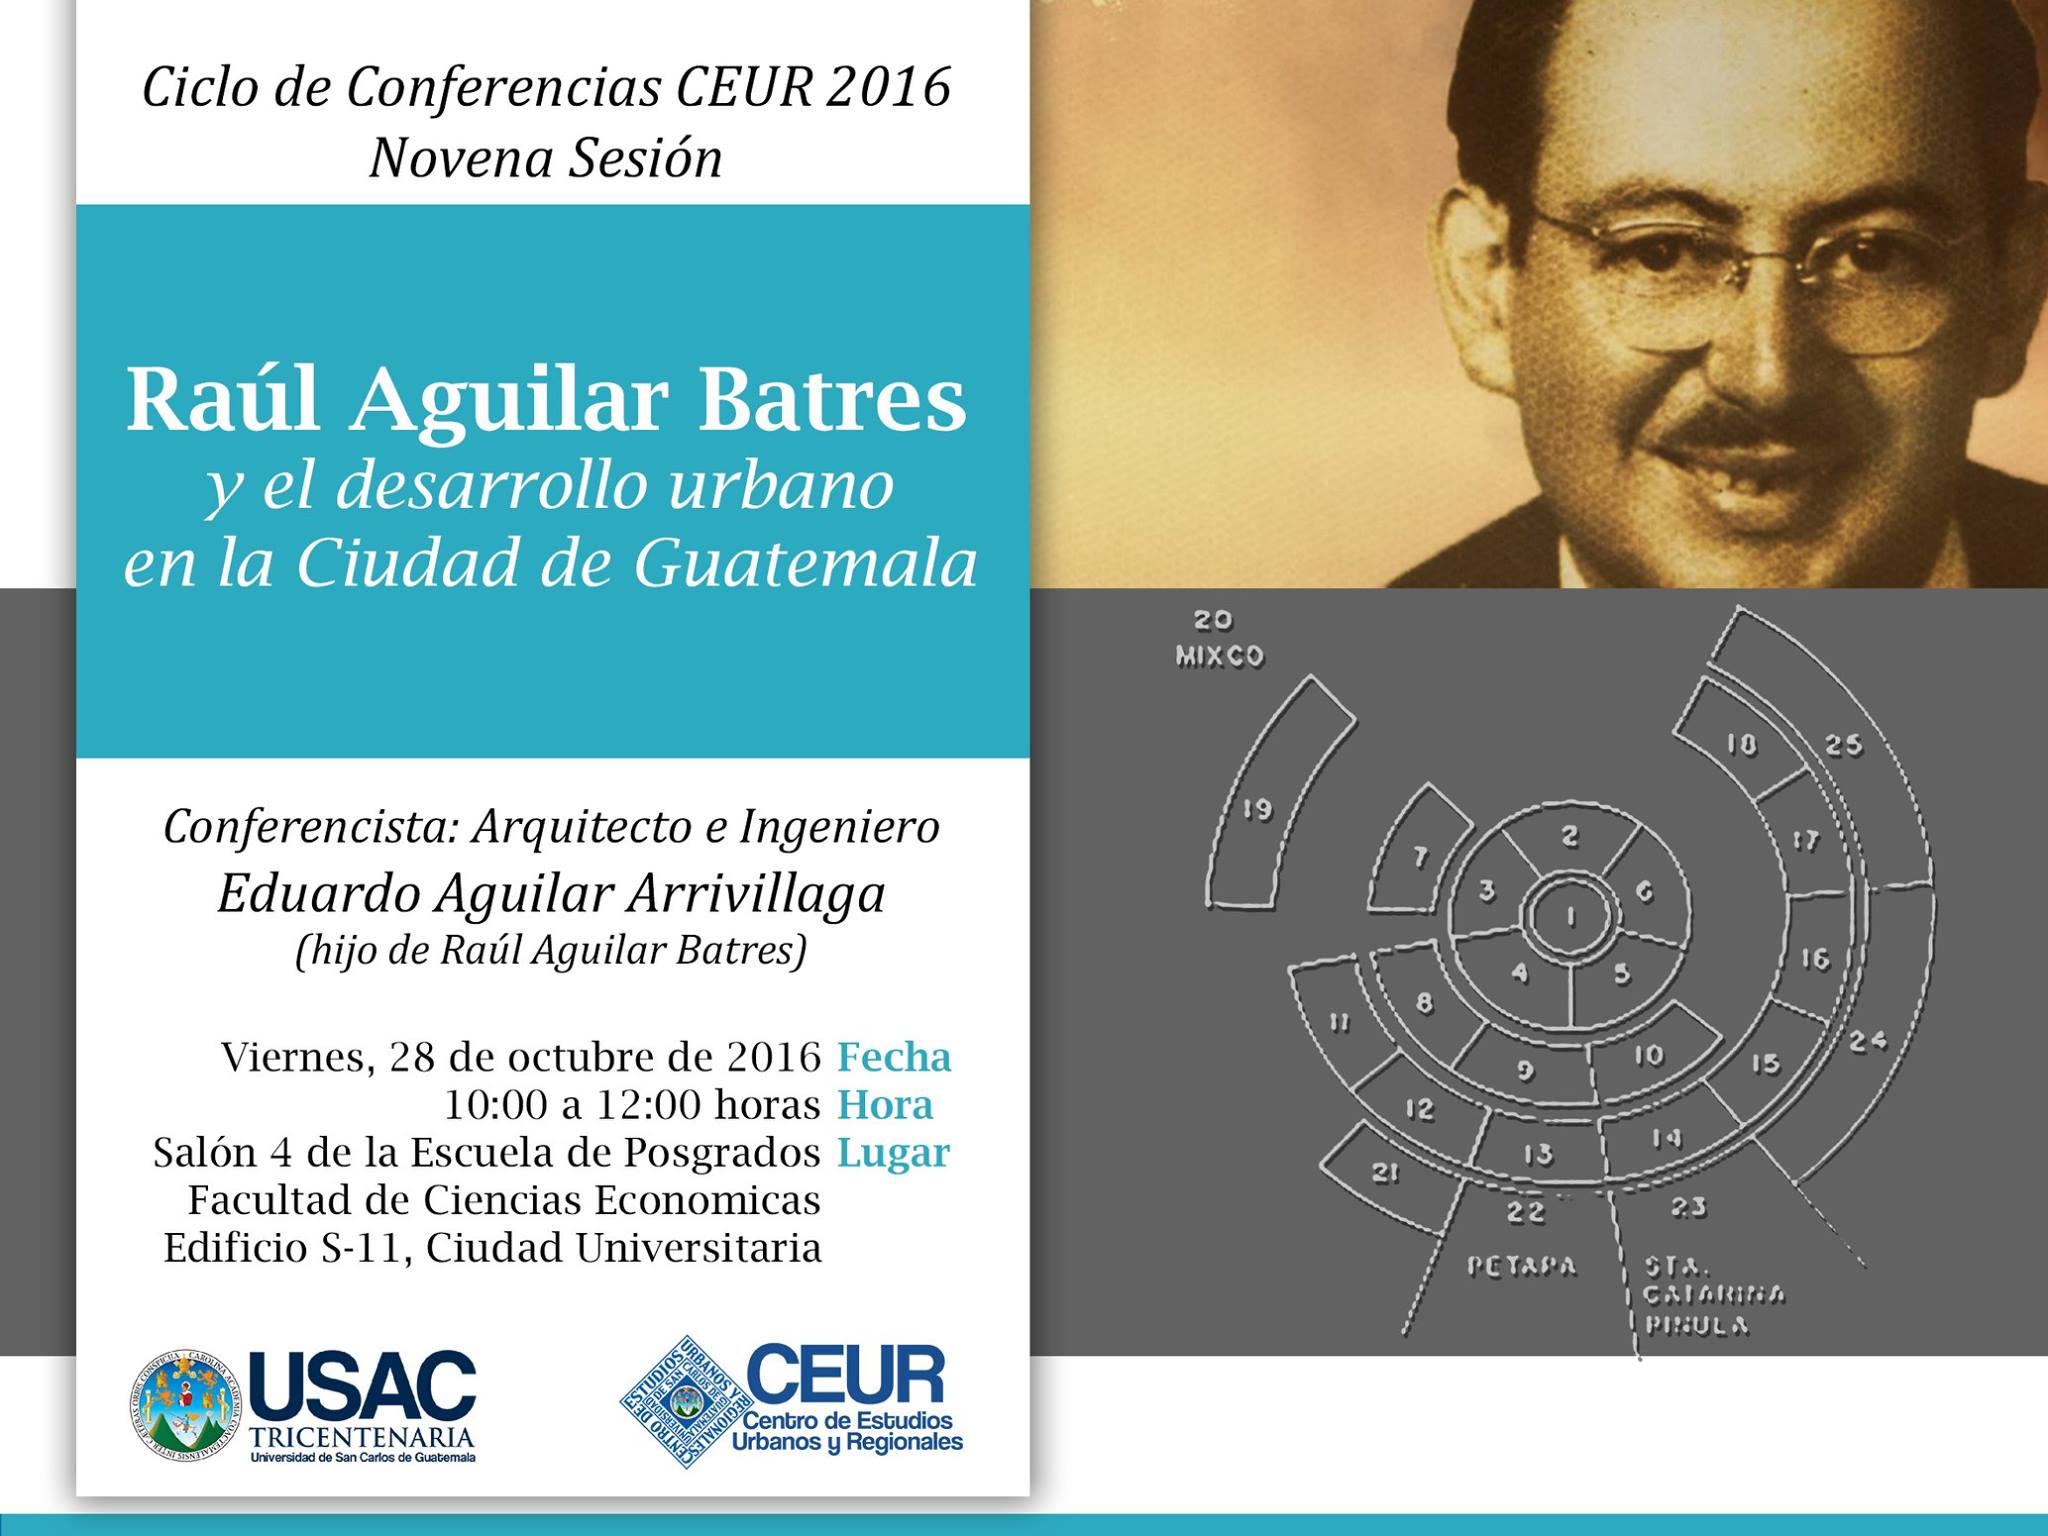 Raúl Aguilar Batres y el desarrollo urbano en la Ciudad de Guatemala